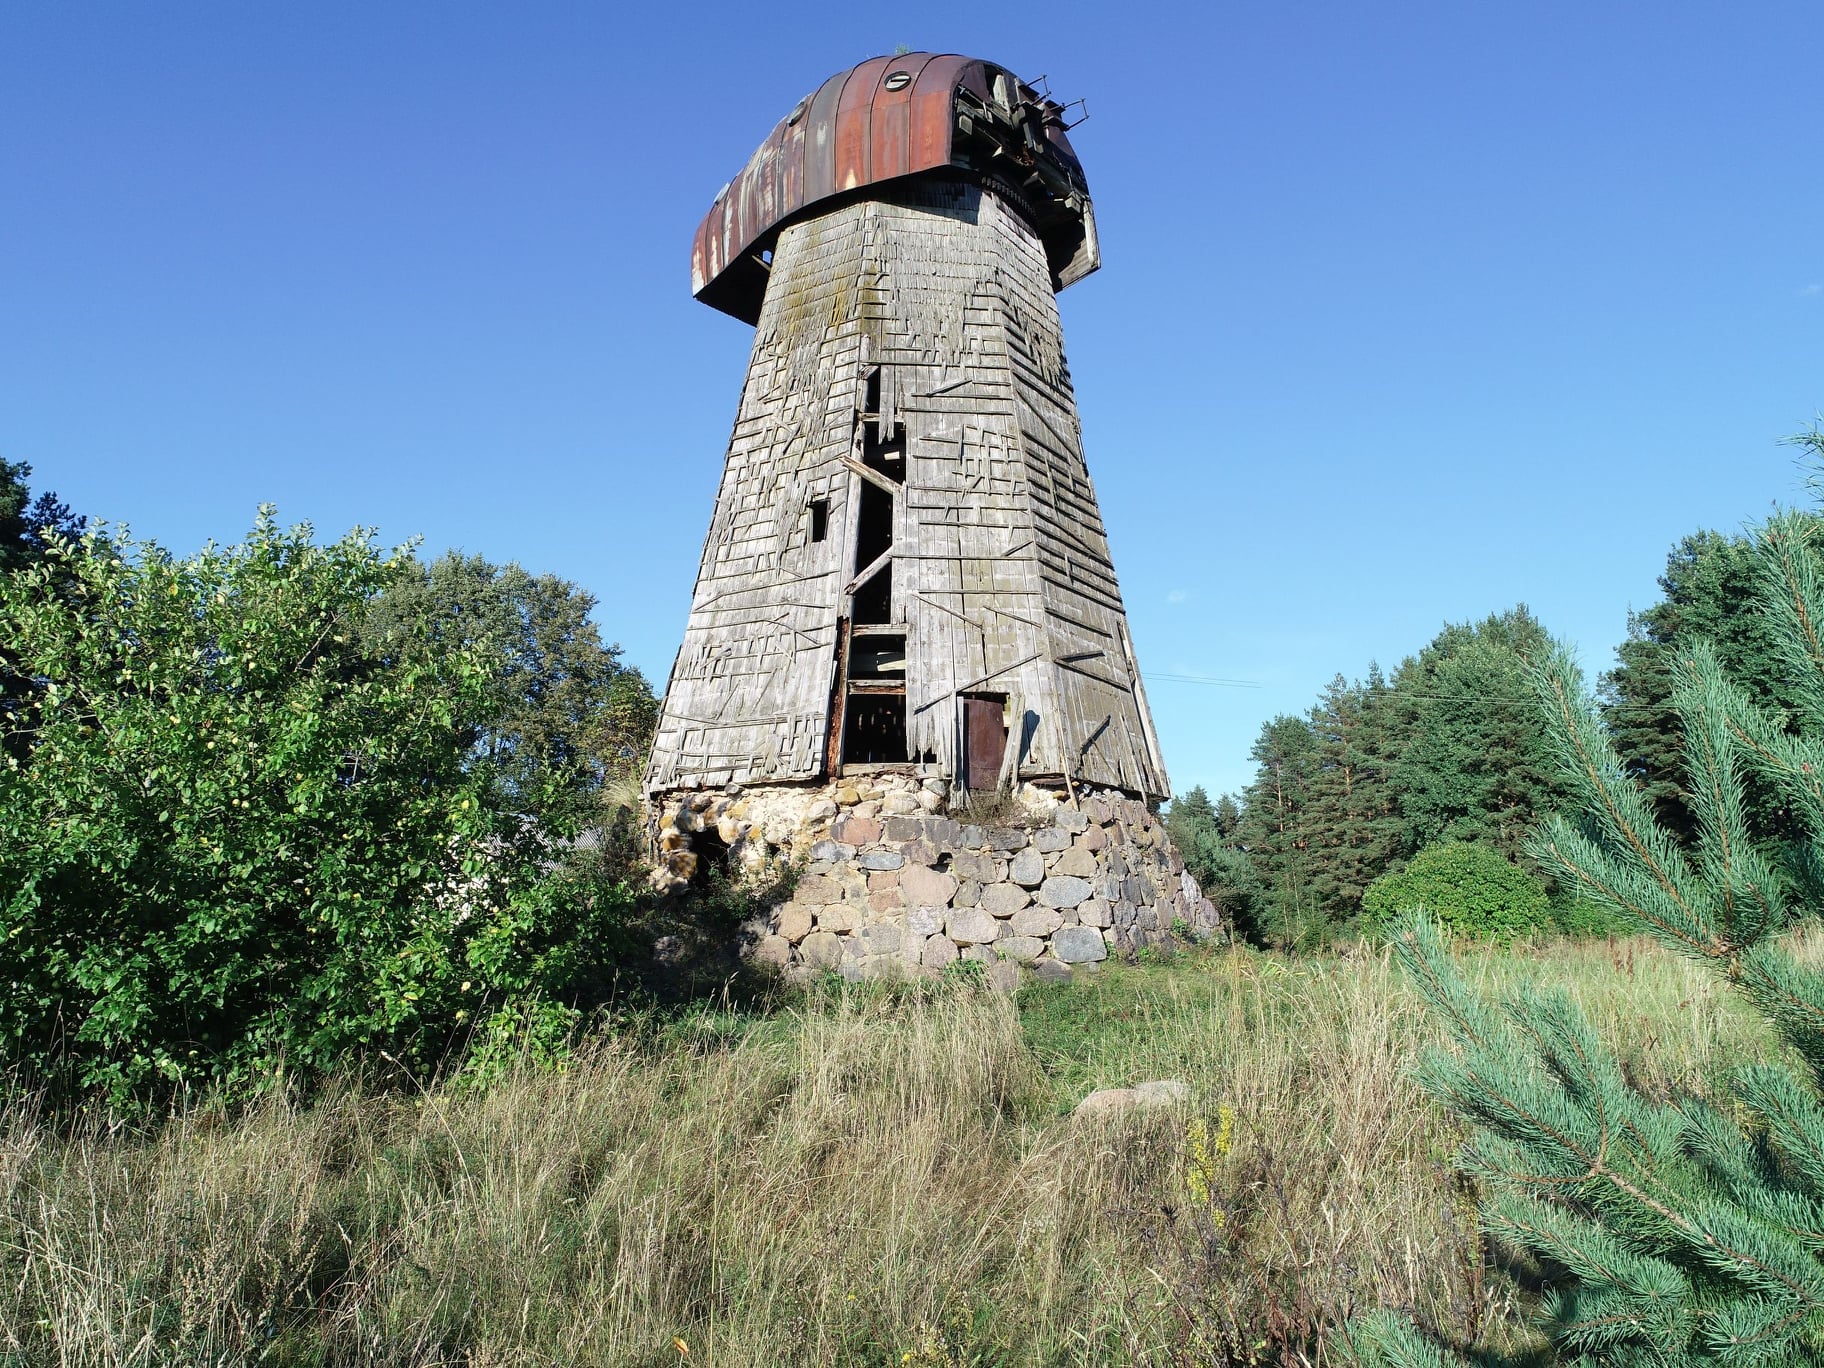 Pakapinė (Lukštai) windmill